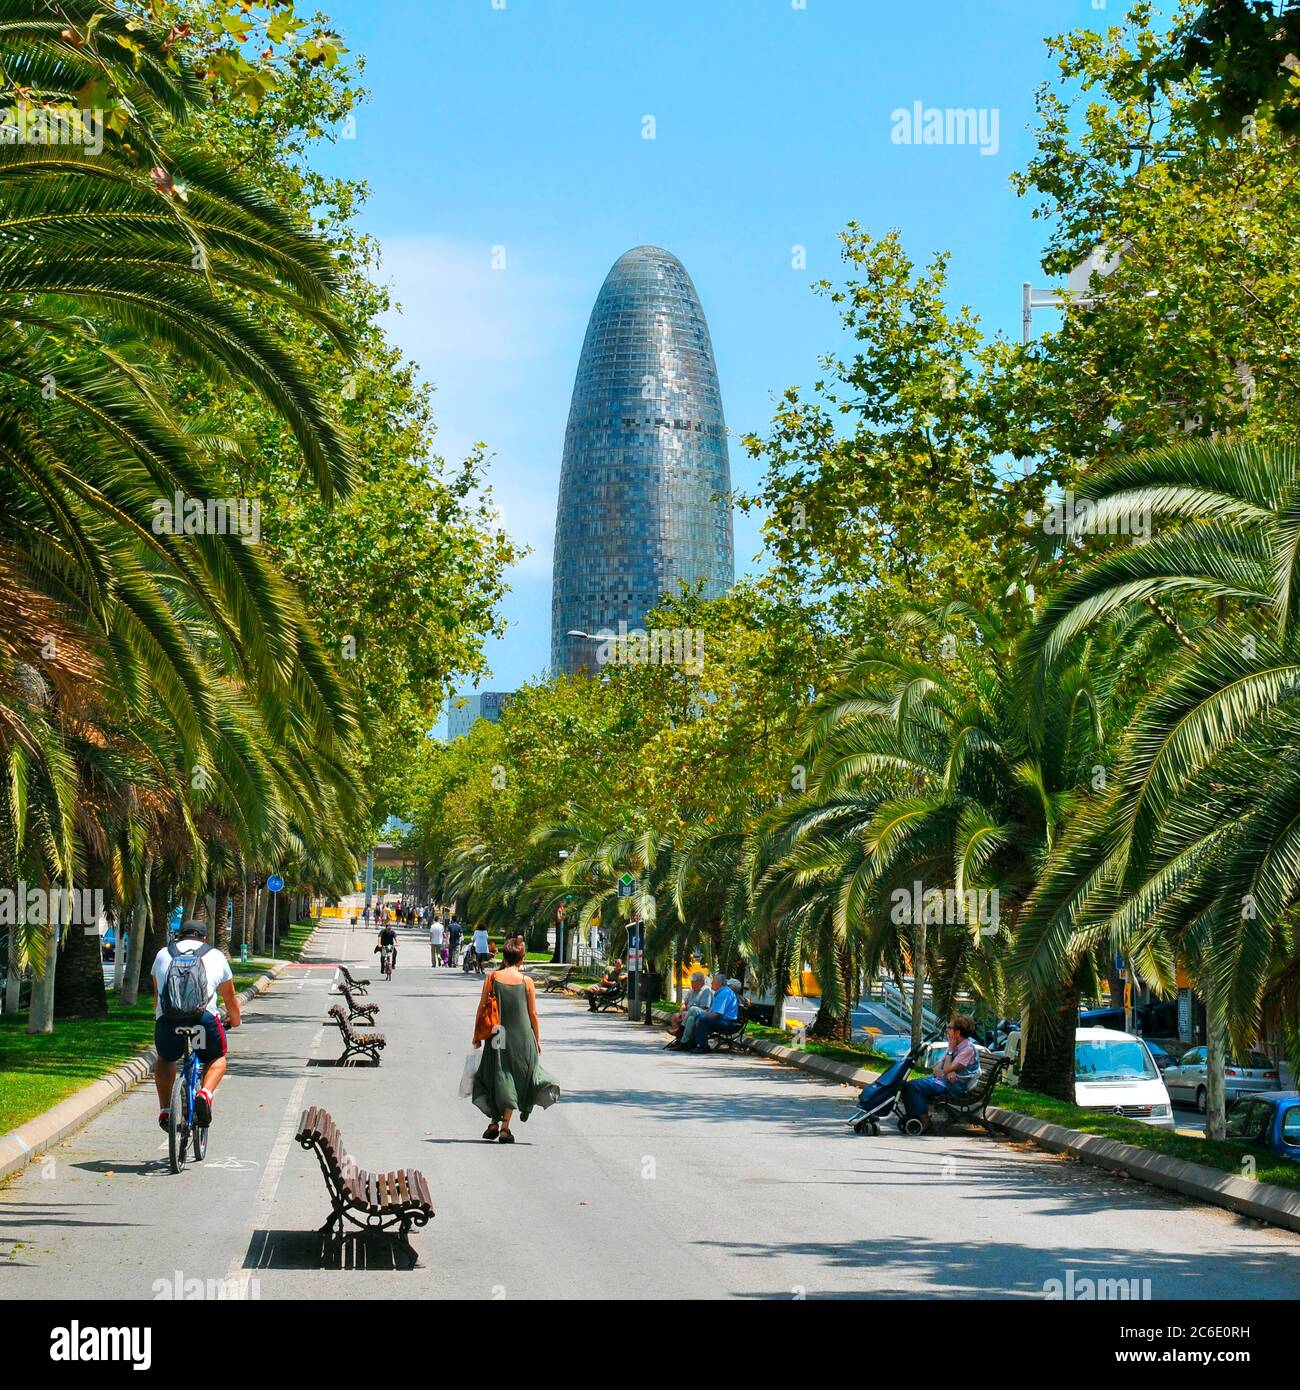 BARCELONA, SPANIEN - 14. JULI: Menschen, die am 14. Juli 2014 in Barcelona, Spanien, in der Avinguda Diagonal mit dem Torre Agbar im Hintergrund spazieren gehen. Diese 38-s Stockfoto